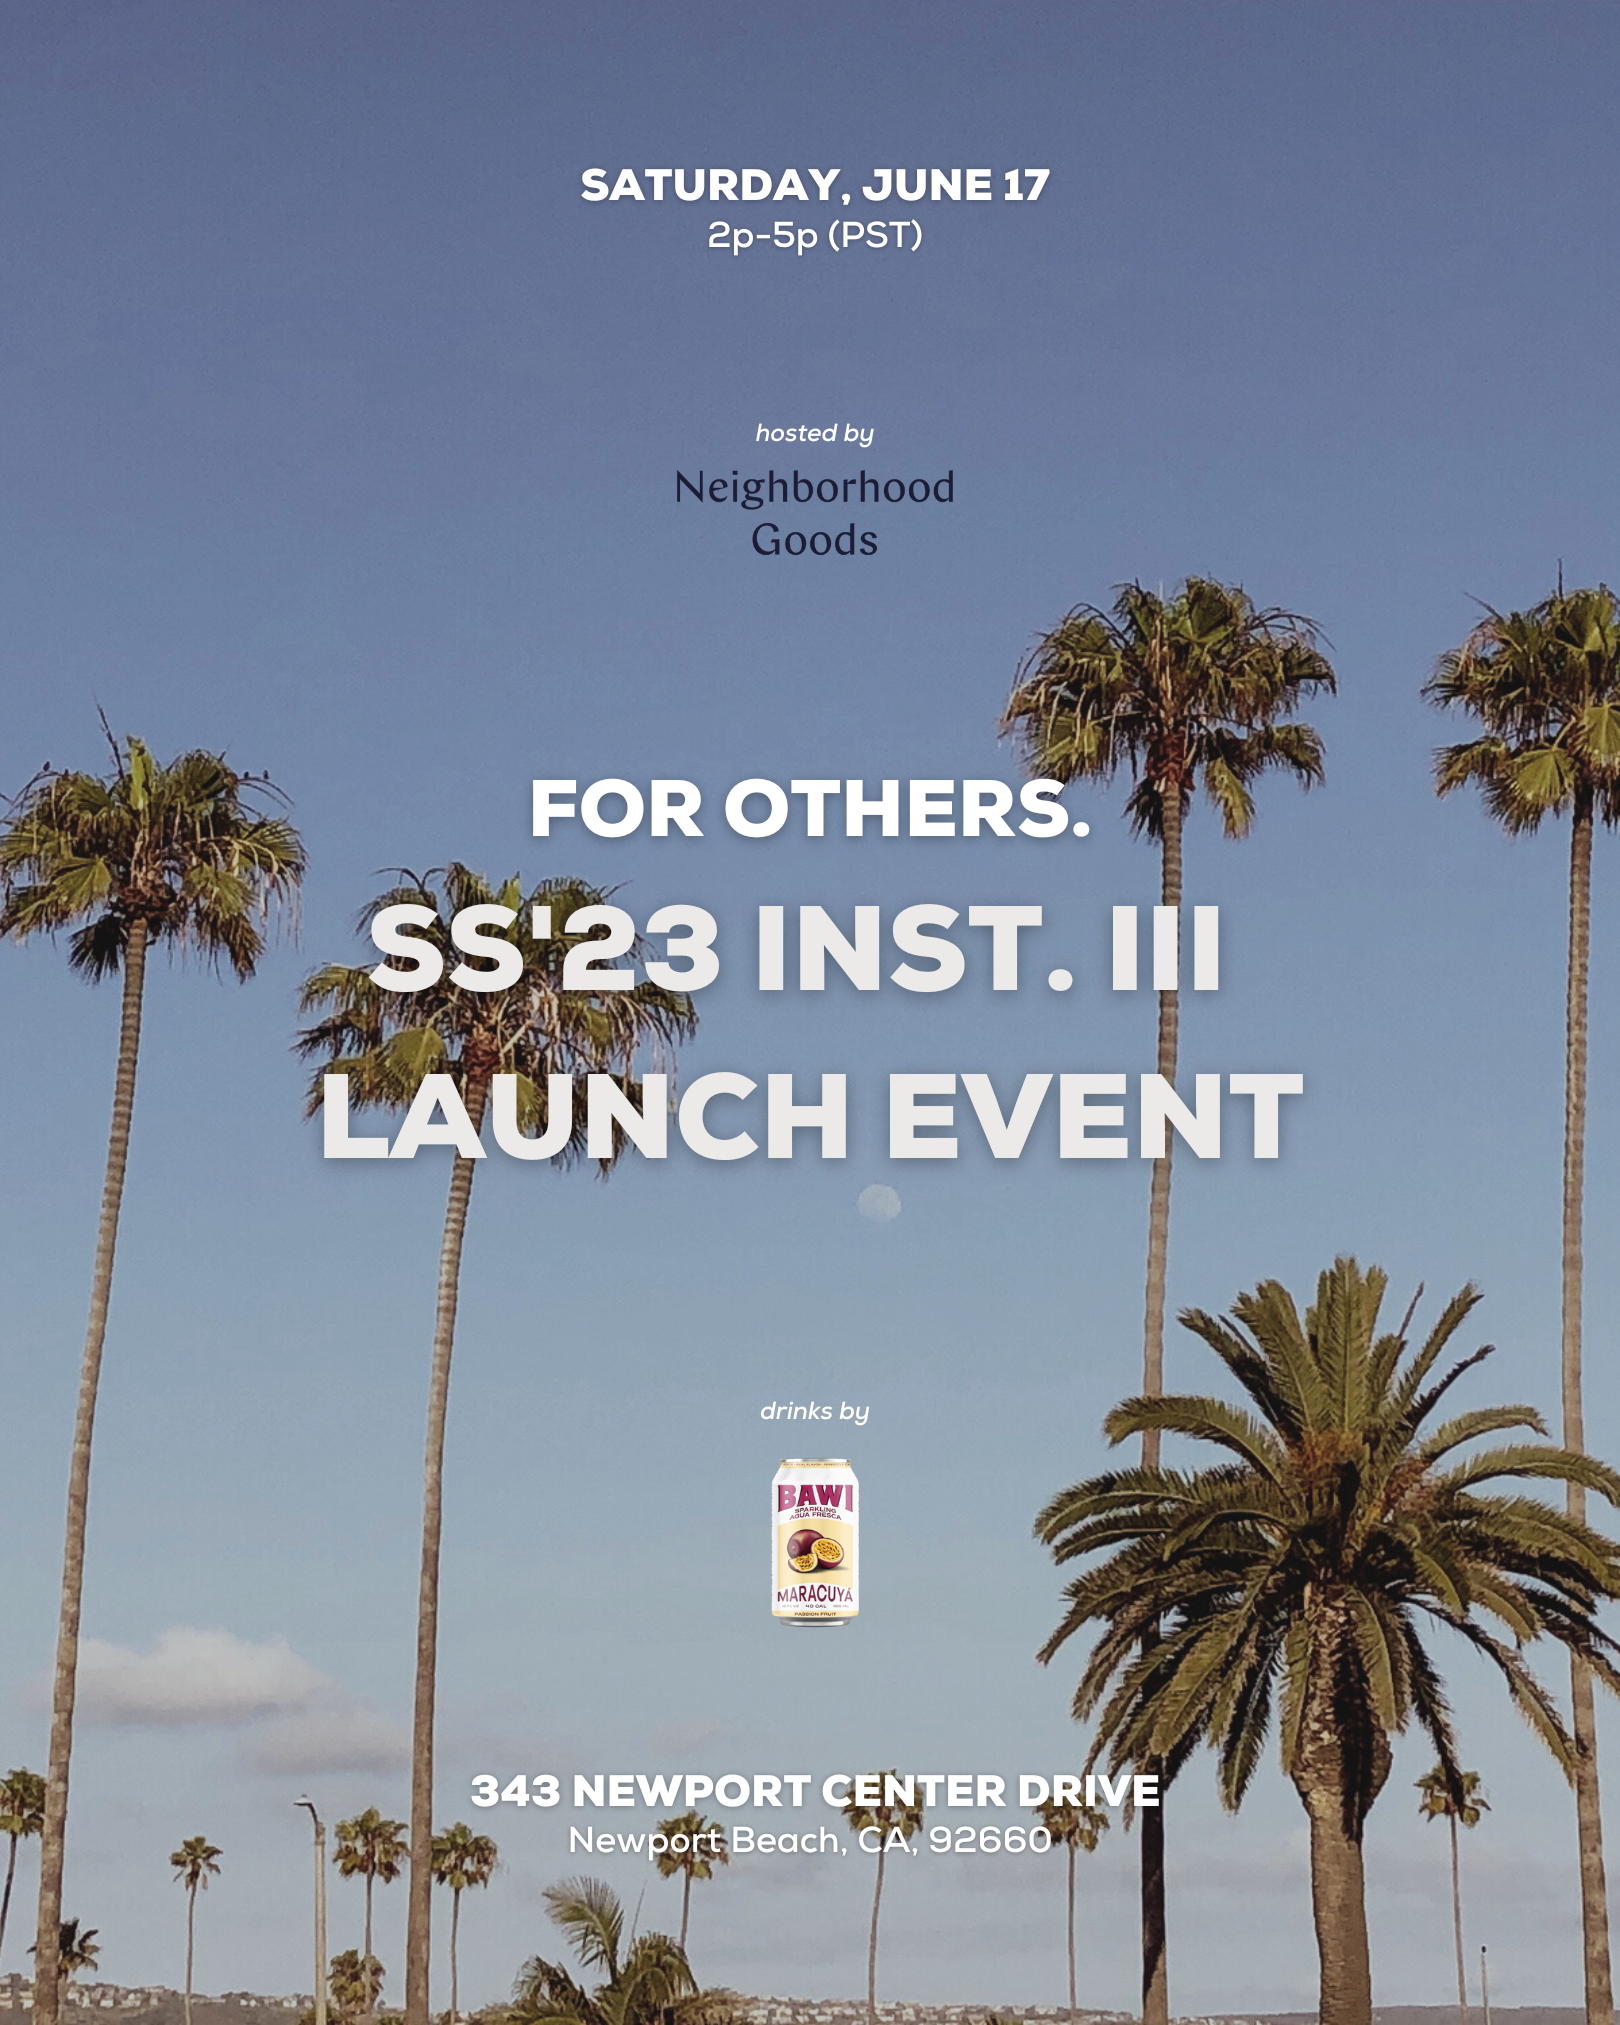 SS'23 Inst. III Launch Event @ Neighborhood Goods in Newport Beach 🎉